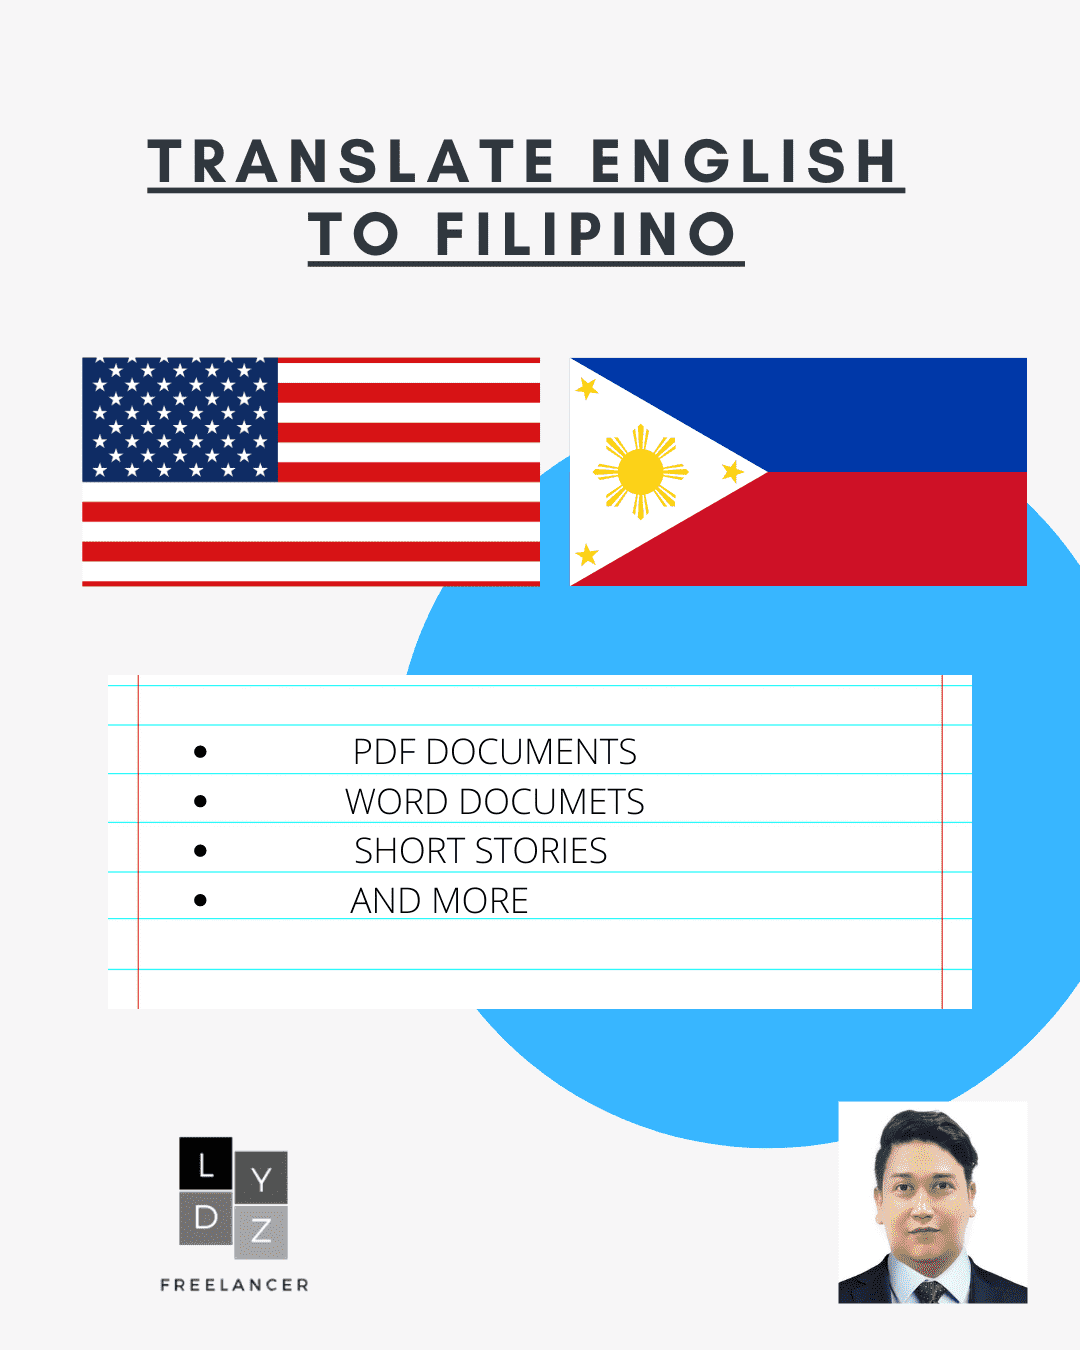 I will translate English language to Filipino language